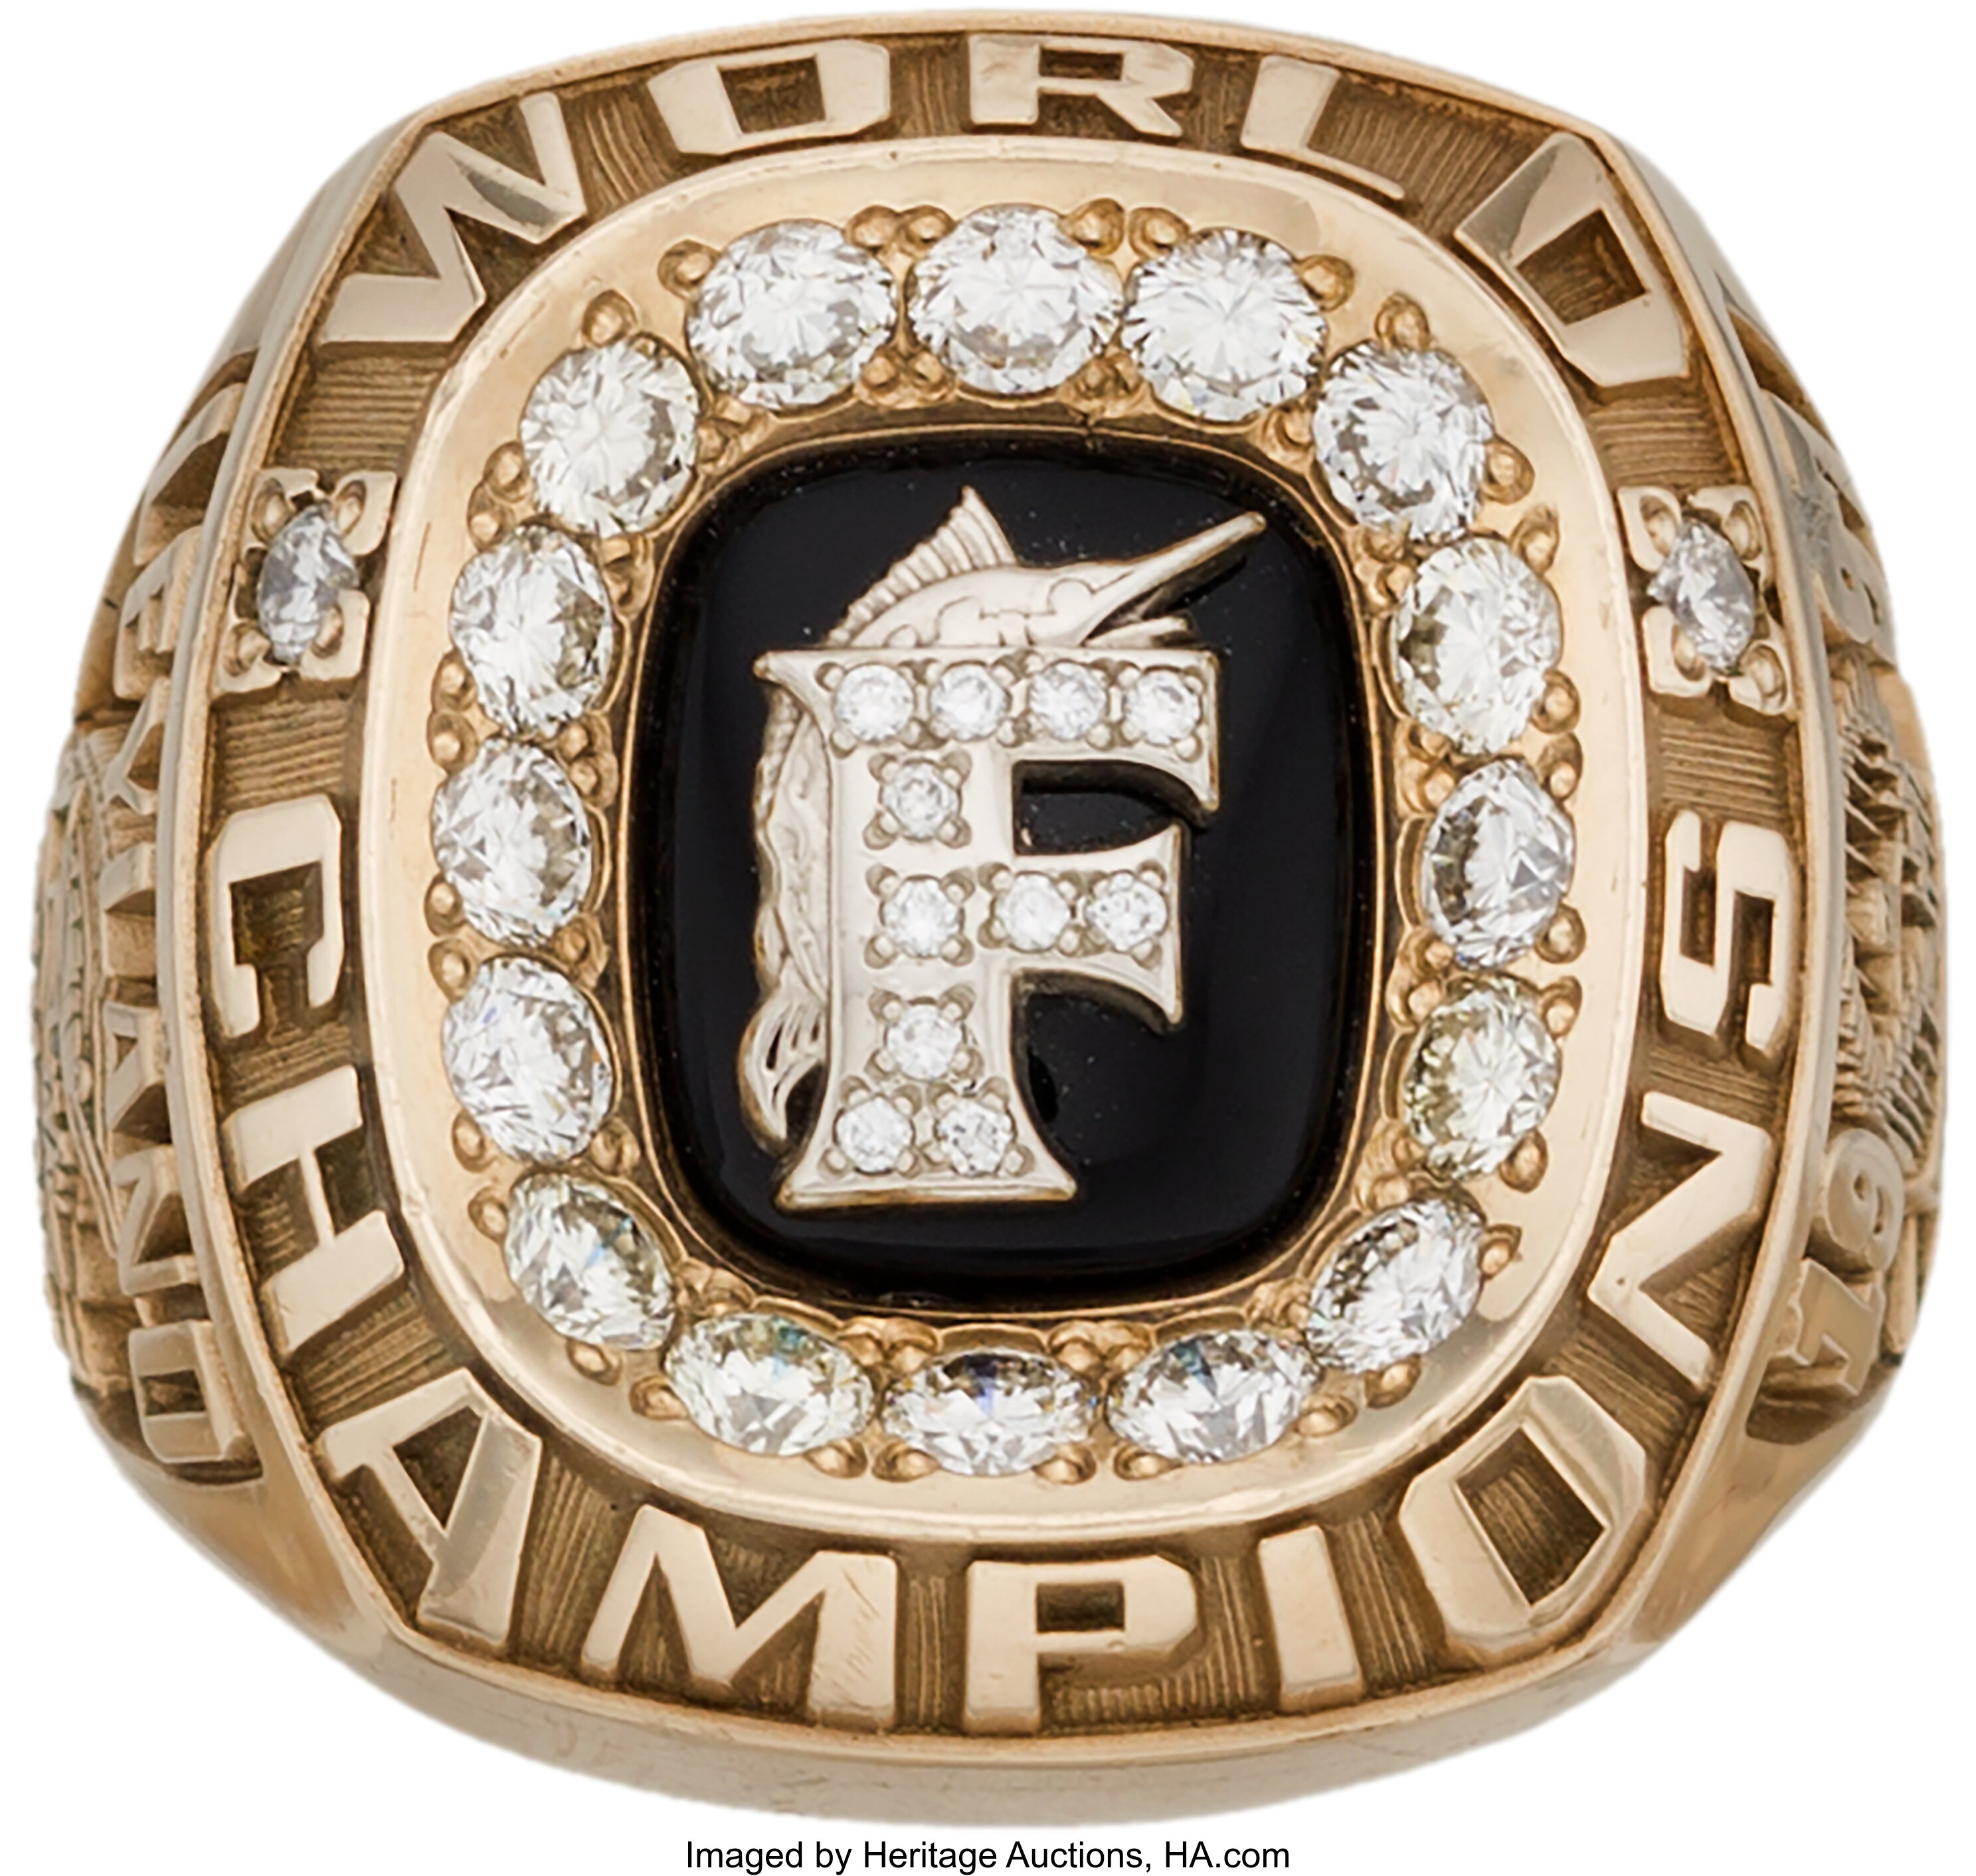 1997 Florida Marlins World Championship Ring. History was made